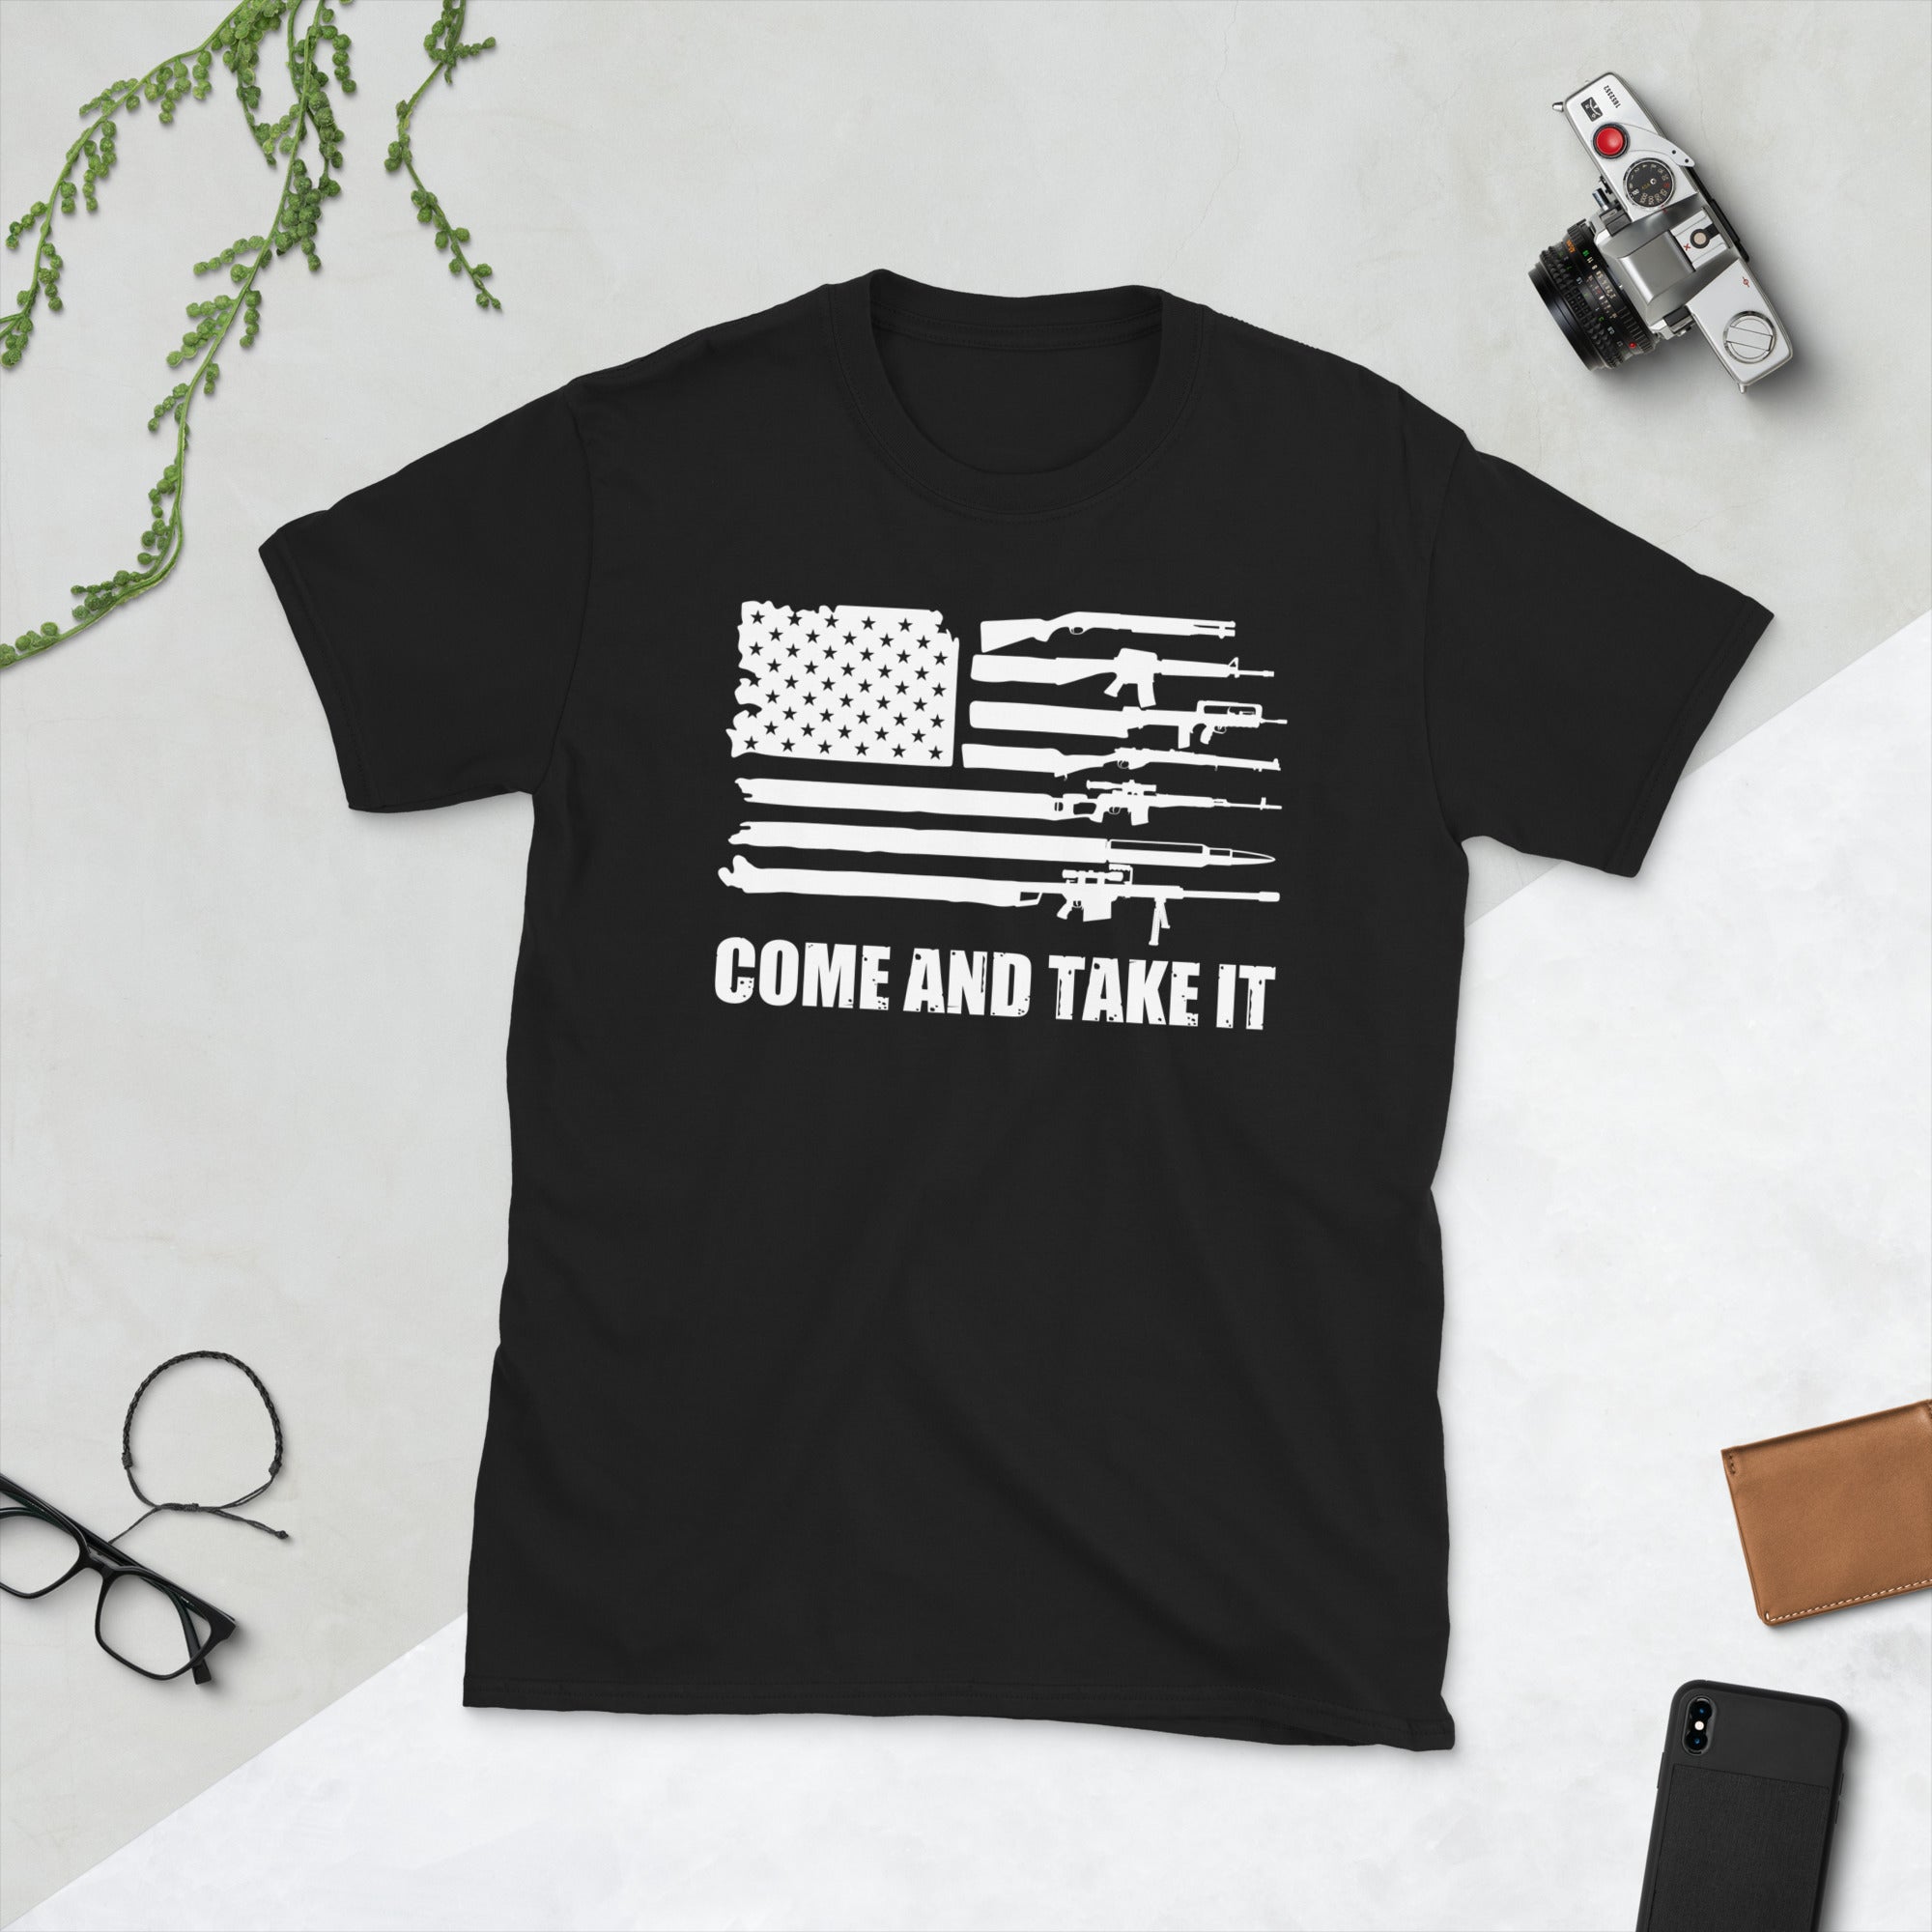 USA Gun Flag Shirt, Come and Take It, 2nd Amendment T-Shirt, Patriotic American Gift, Gun Flag TShirt, AR15, Army Veteran Gifts, 2A Shirt - Madeinsea©